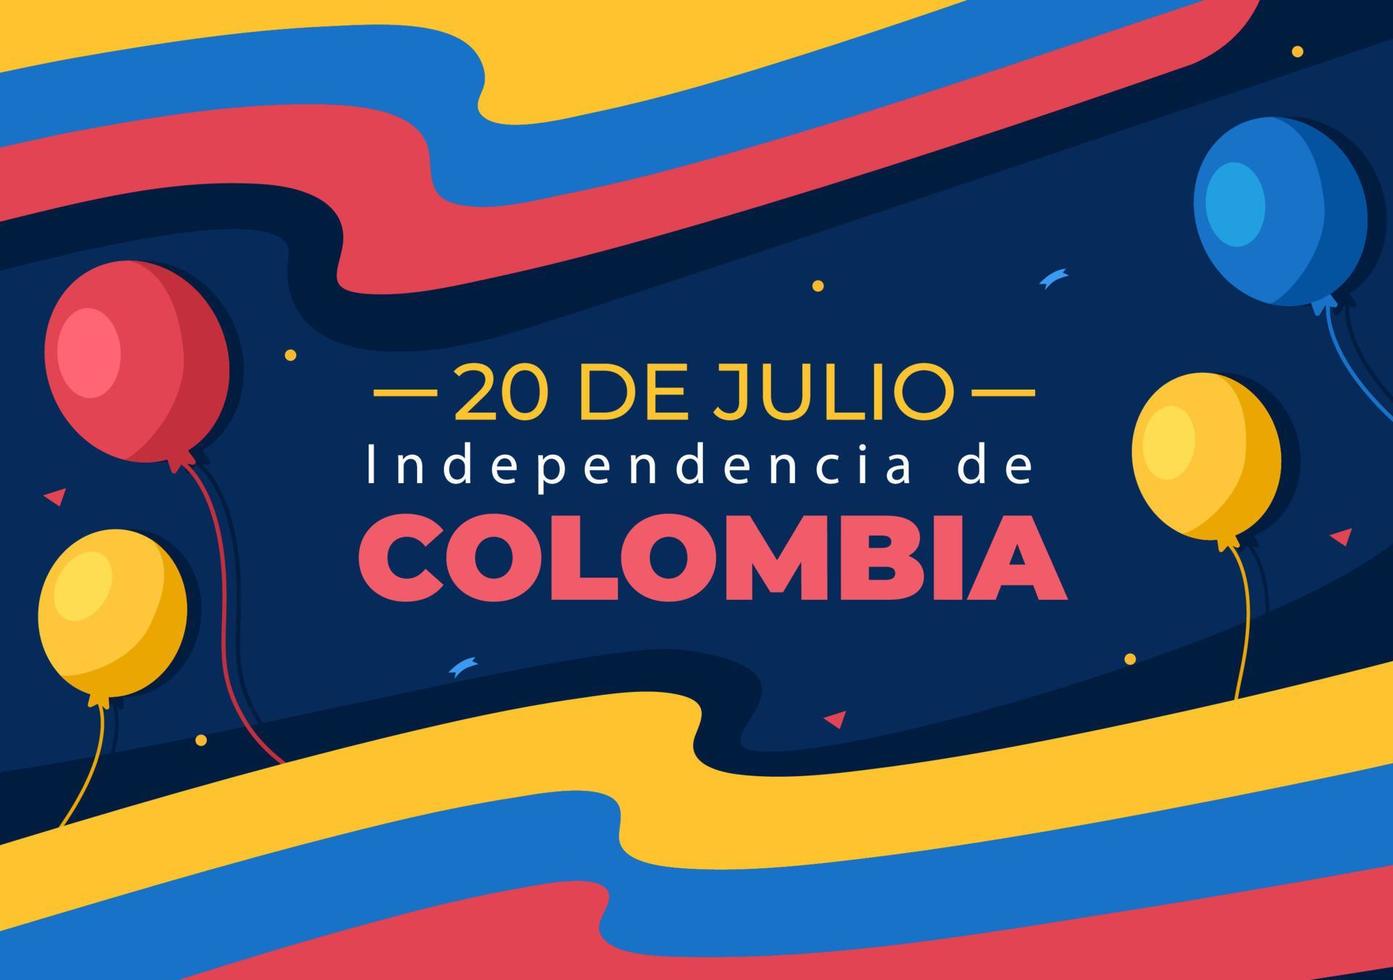 20 juli independencia de colombia cartoon afbeelding met vlaggen en ballonnen voor poster stijl ontwerp vector